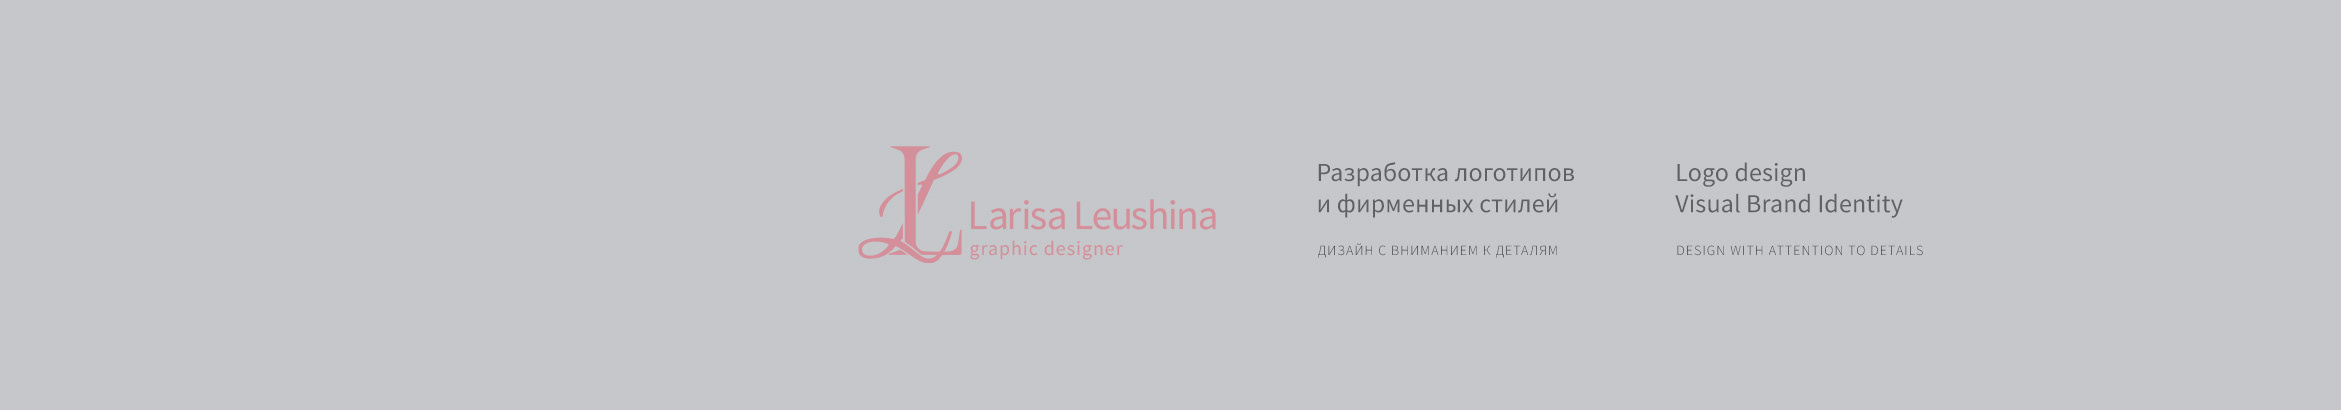 Larisa Leushinas profilbanner